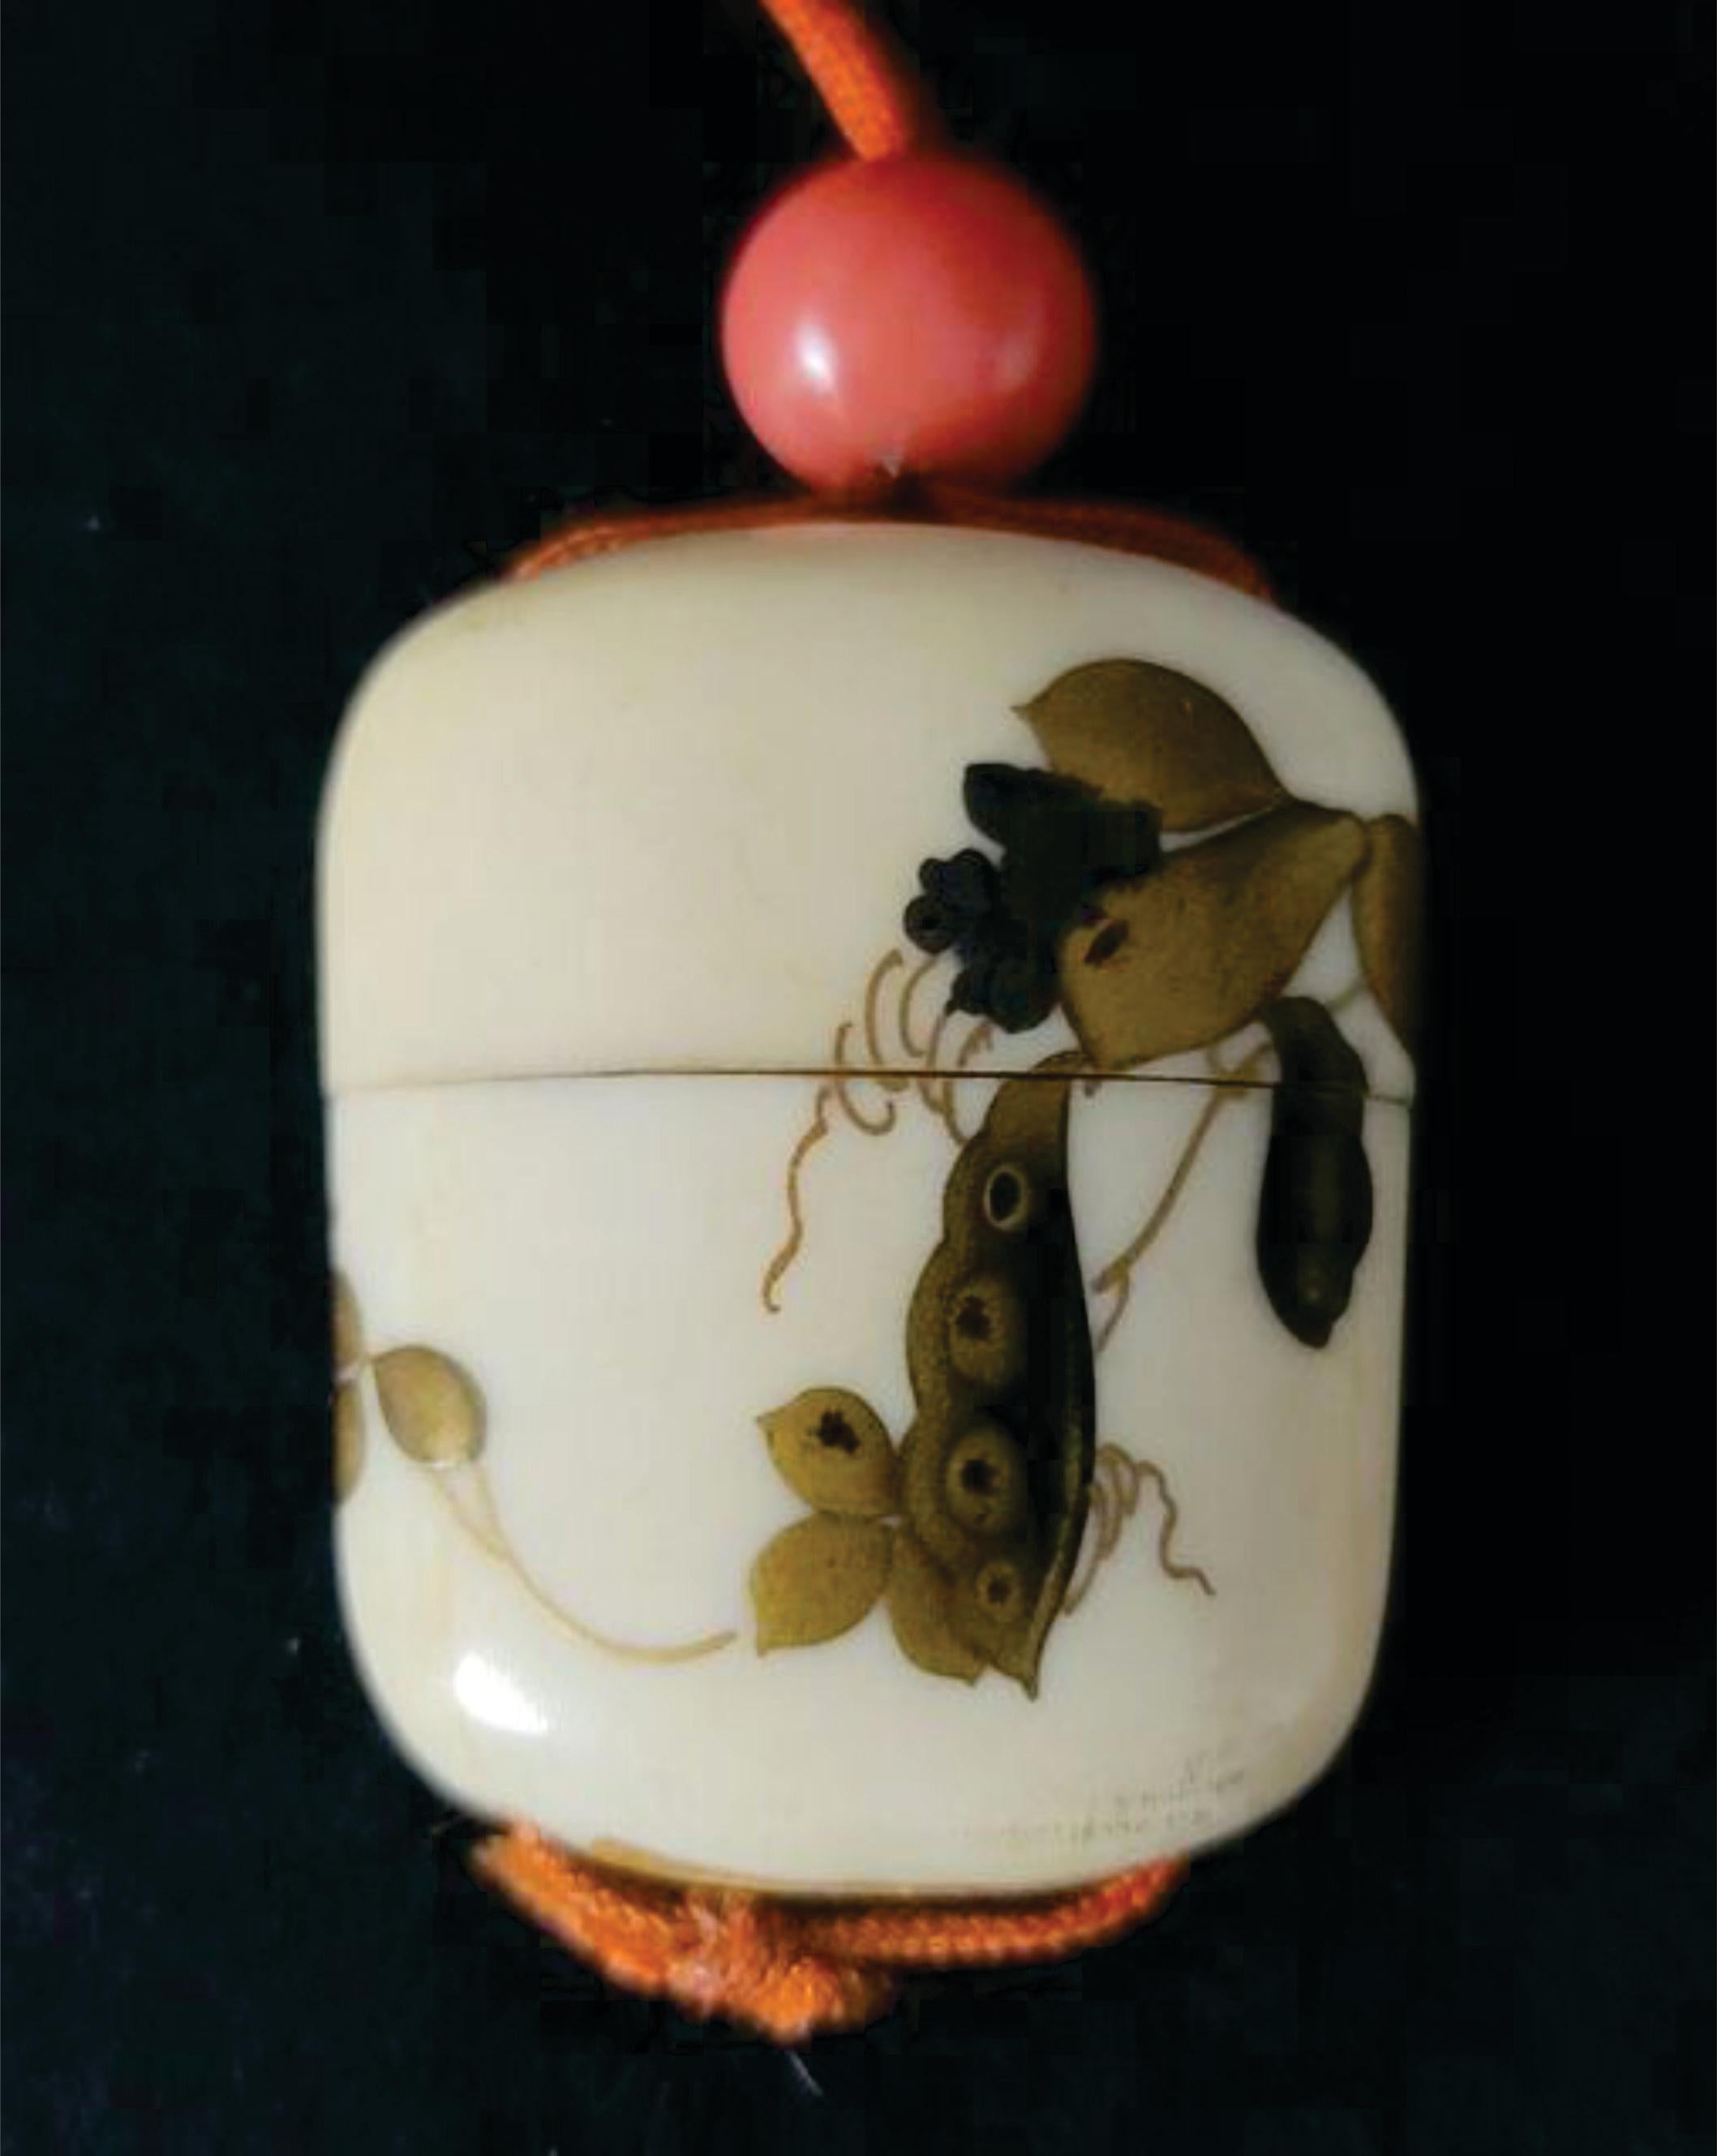 Inro japonais sculpté et décoré de dorures avec corail Ojime Fin de l'ère Meiji

Présentant un inro japonais sculpté et décoré en vermeil avec un Ojime en corail représentant des fleurs et des poutres et un Levi's sur le corps et le couvercle.